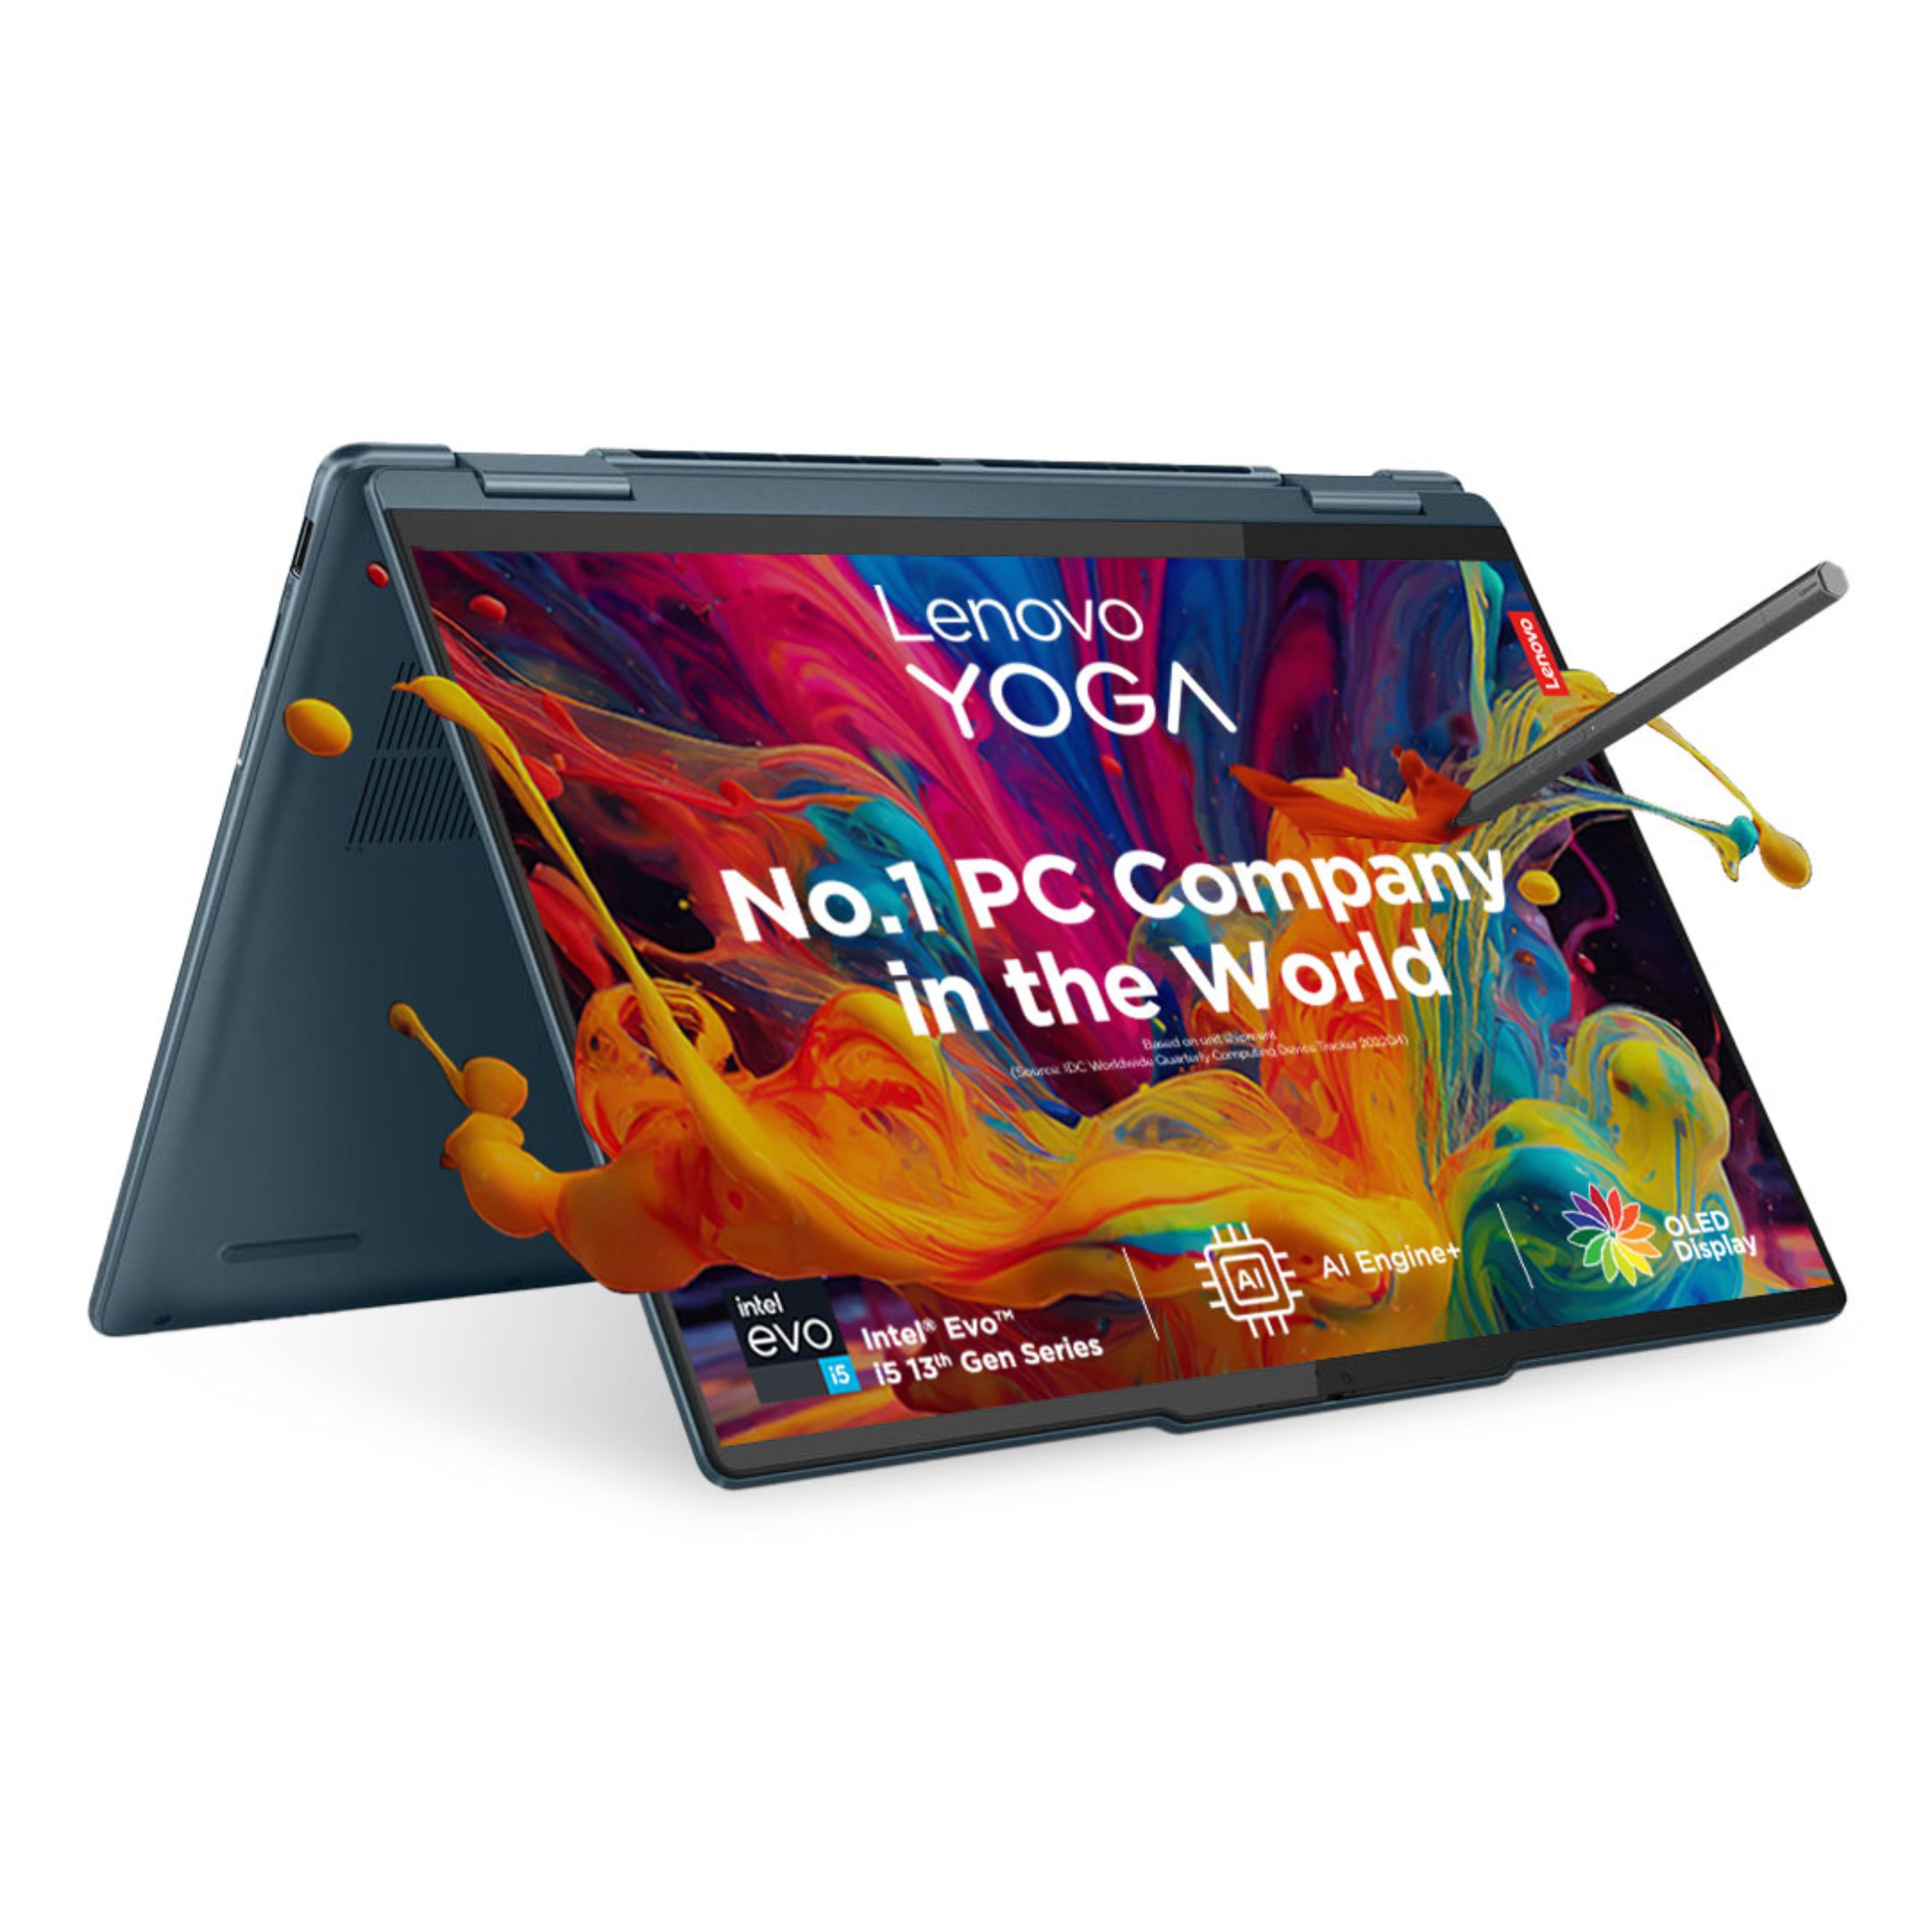 Yoga-7i-13th-Gen-35.56cms-Intel-i5.jpg